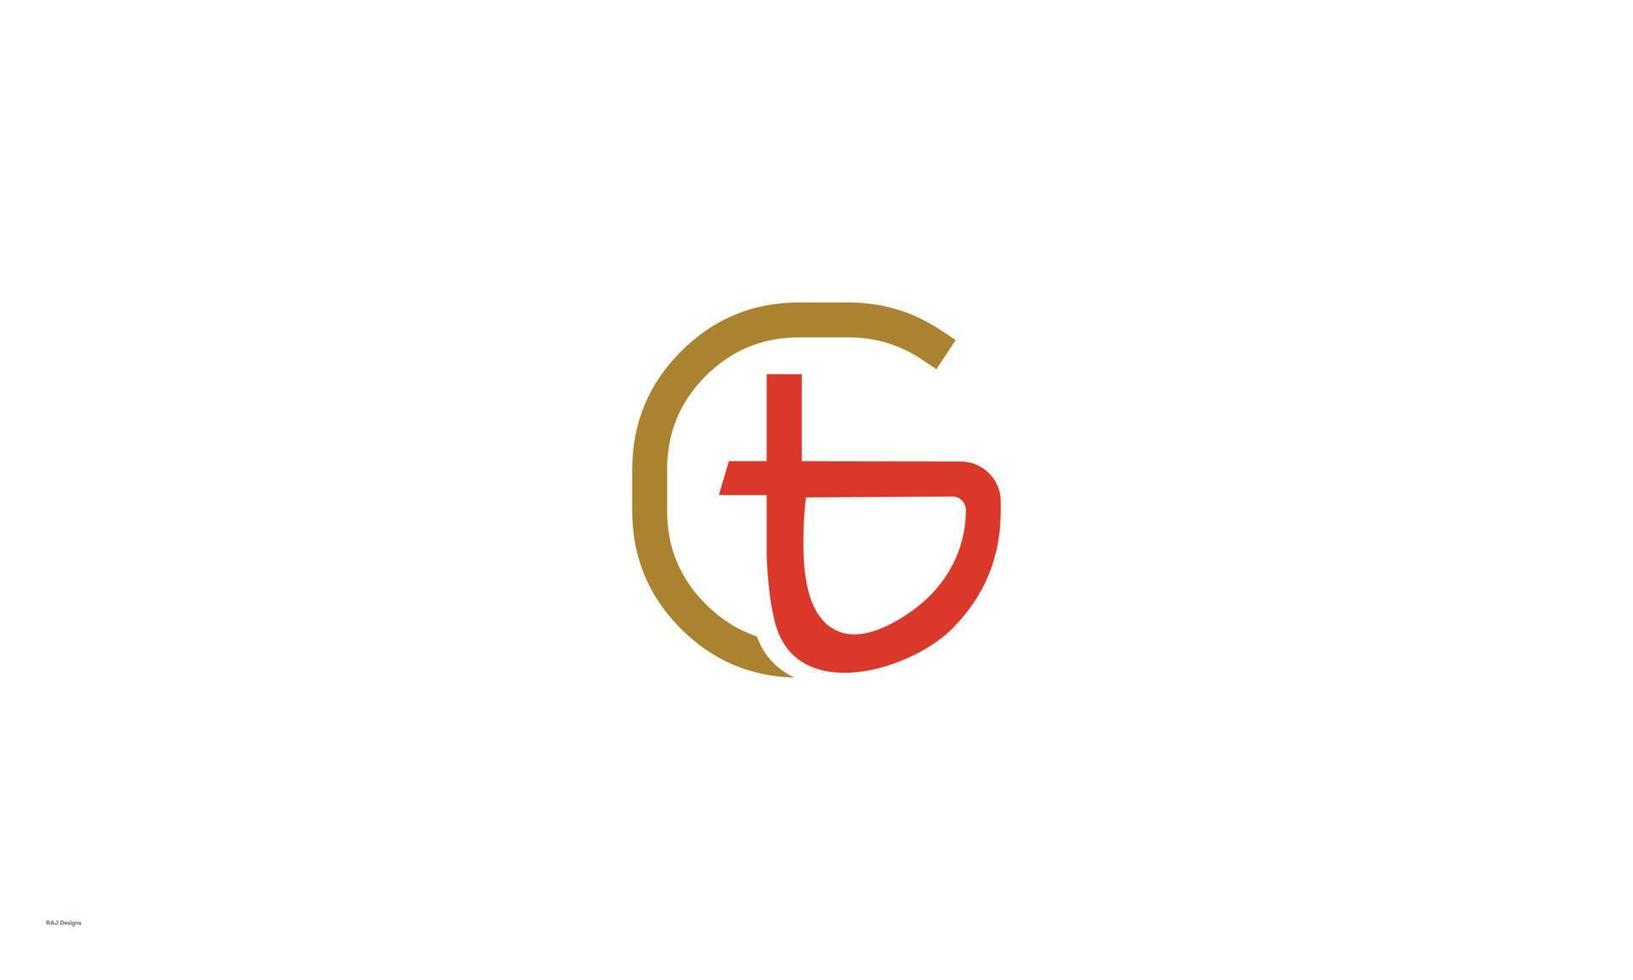 alfabeto lettere iniziali monogramma logo gt, tg, g e t vettore